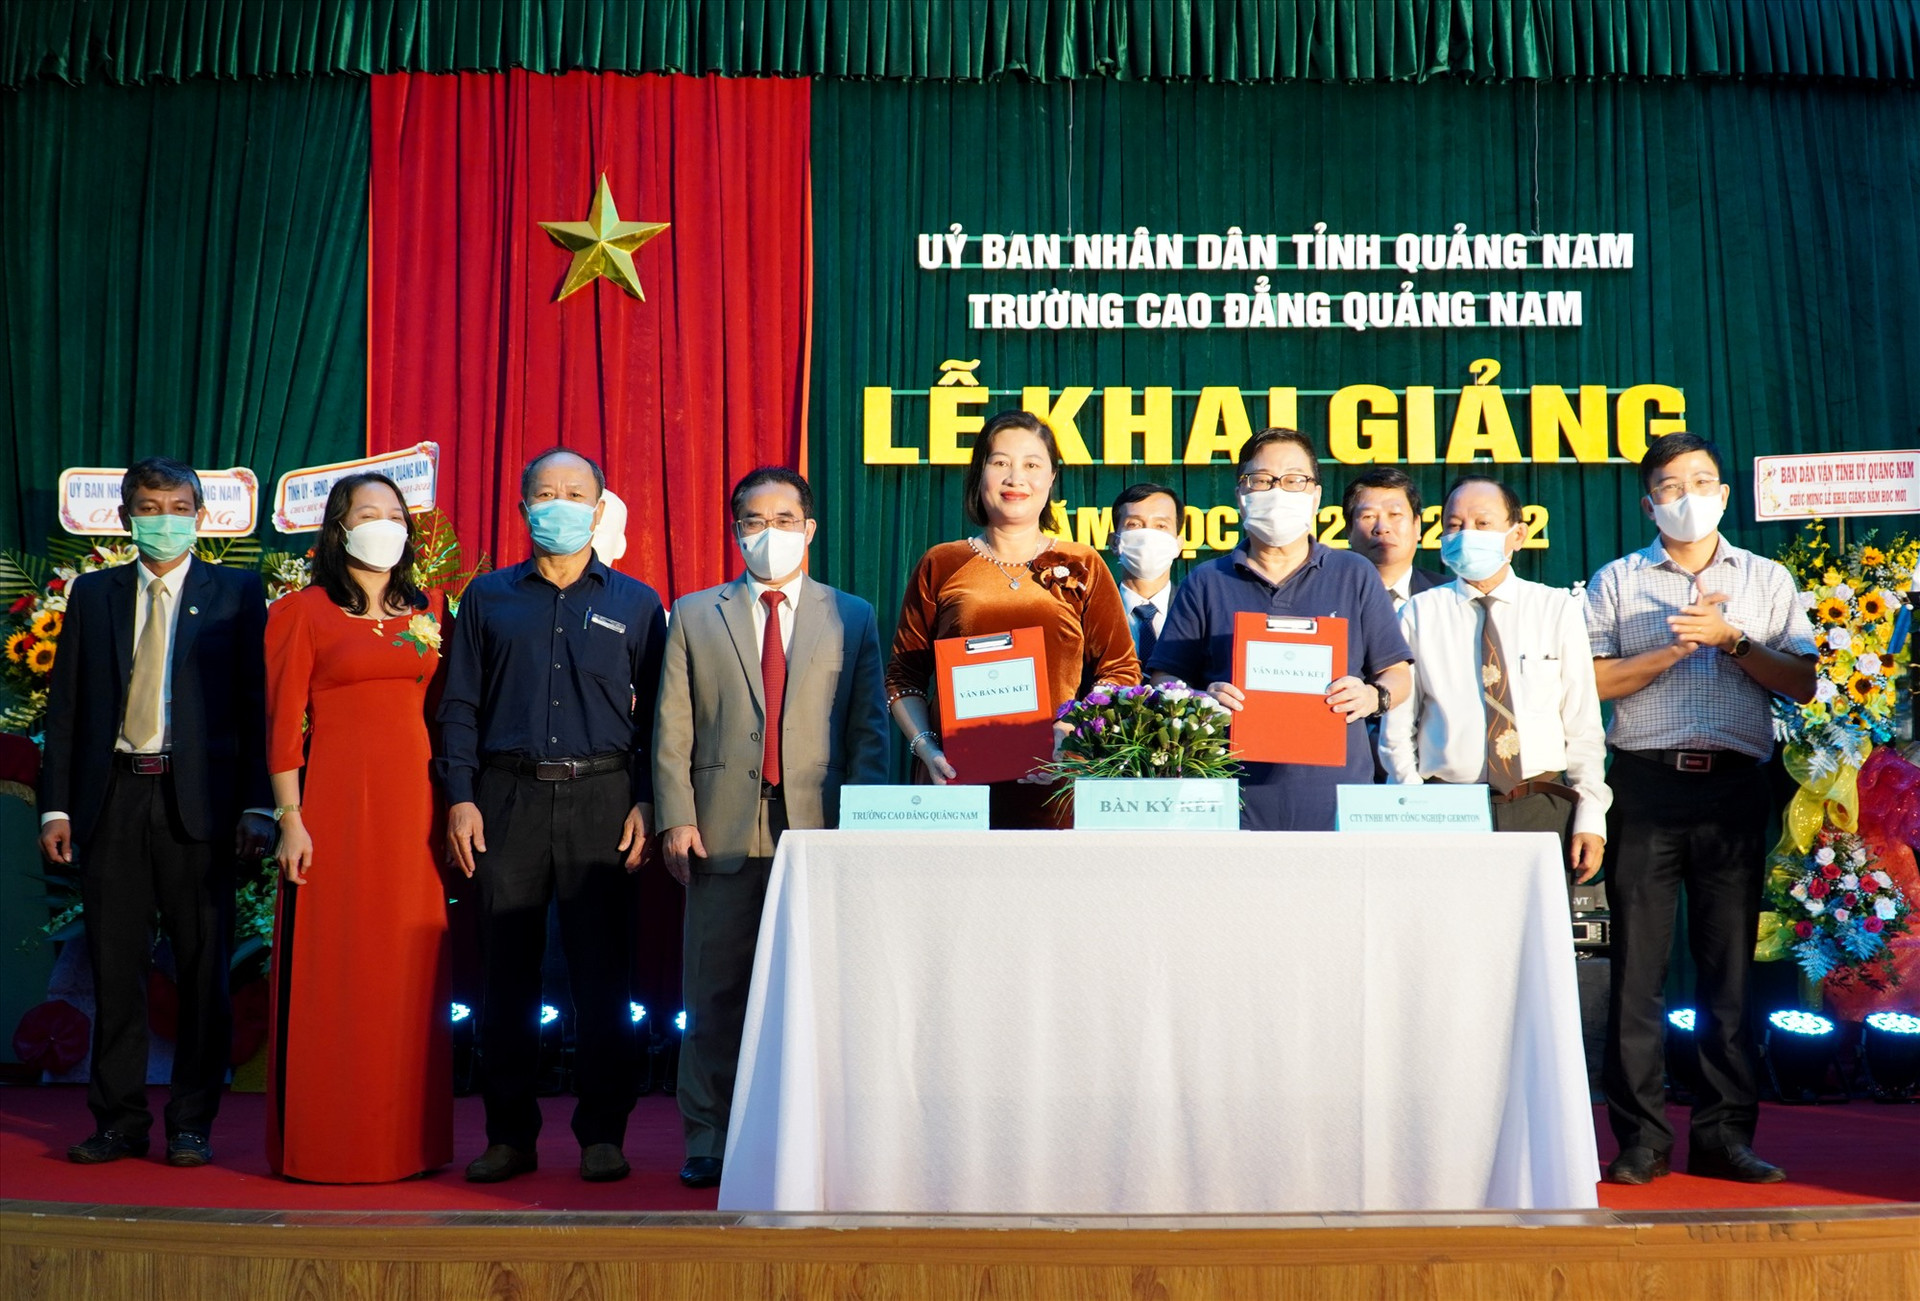 Trường Cao đẳng Quảng Nam tổ chức ký kết hợp tác liên kết đào tạo nguồn lao động với doanh nghiệp. Ảnh: H.Q